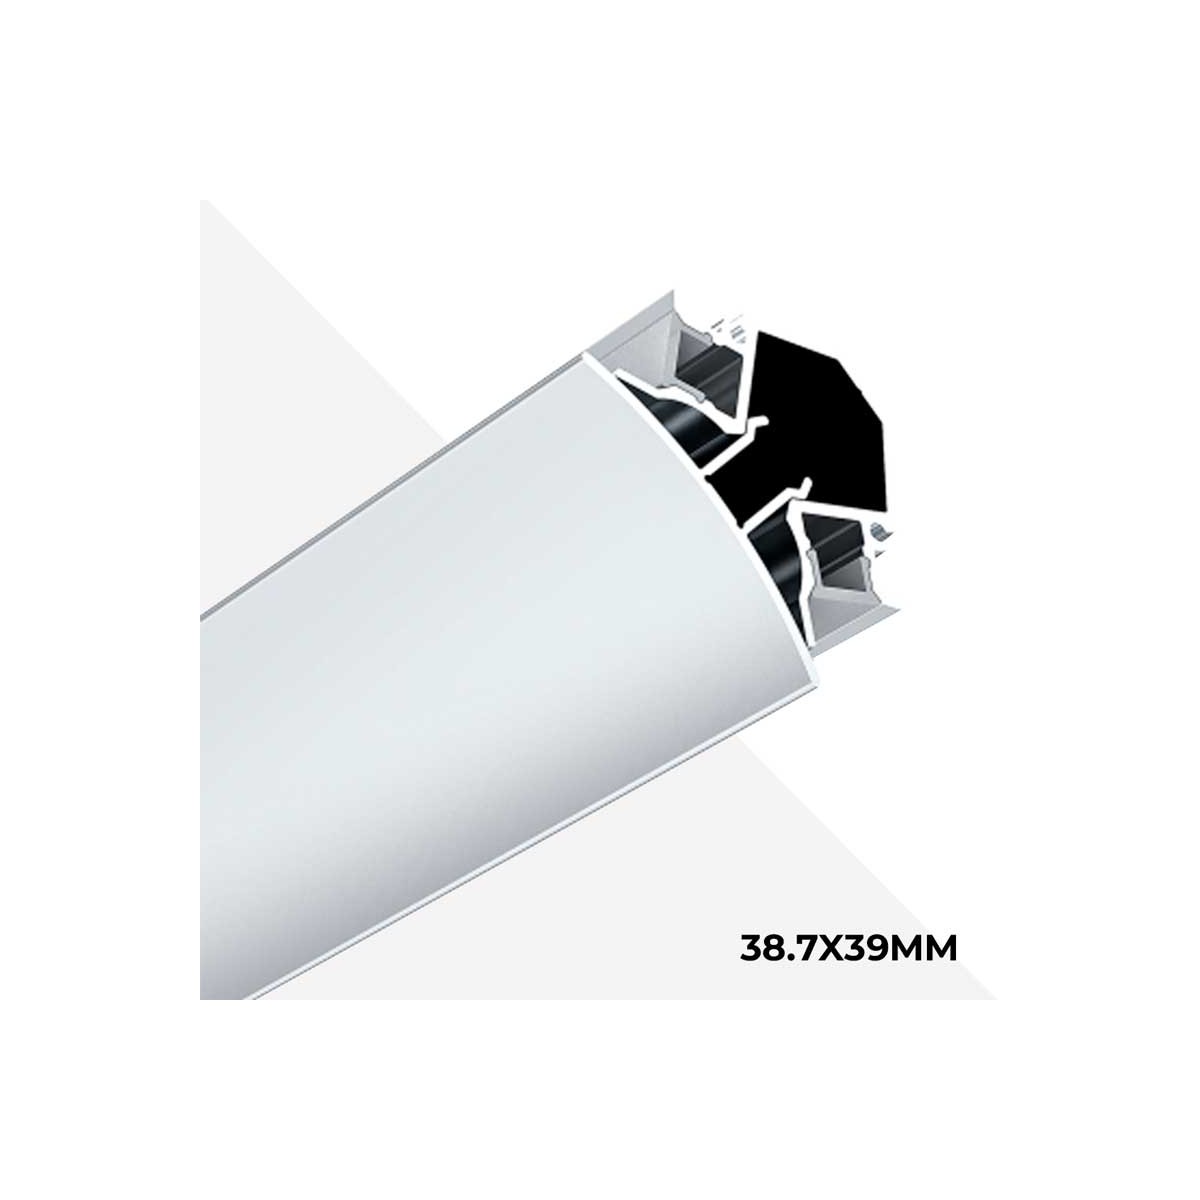 Il profilo angolare in alluminio 38,7x39 mm con strisce LED garantisce una doppia illuminazione di pareti e soffitti.